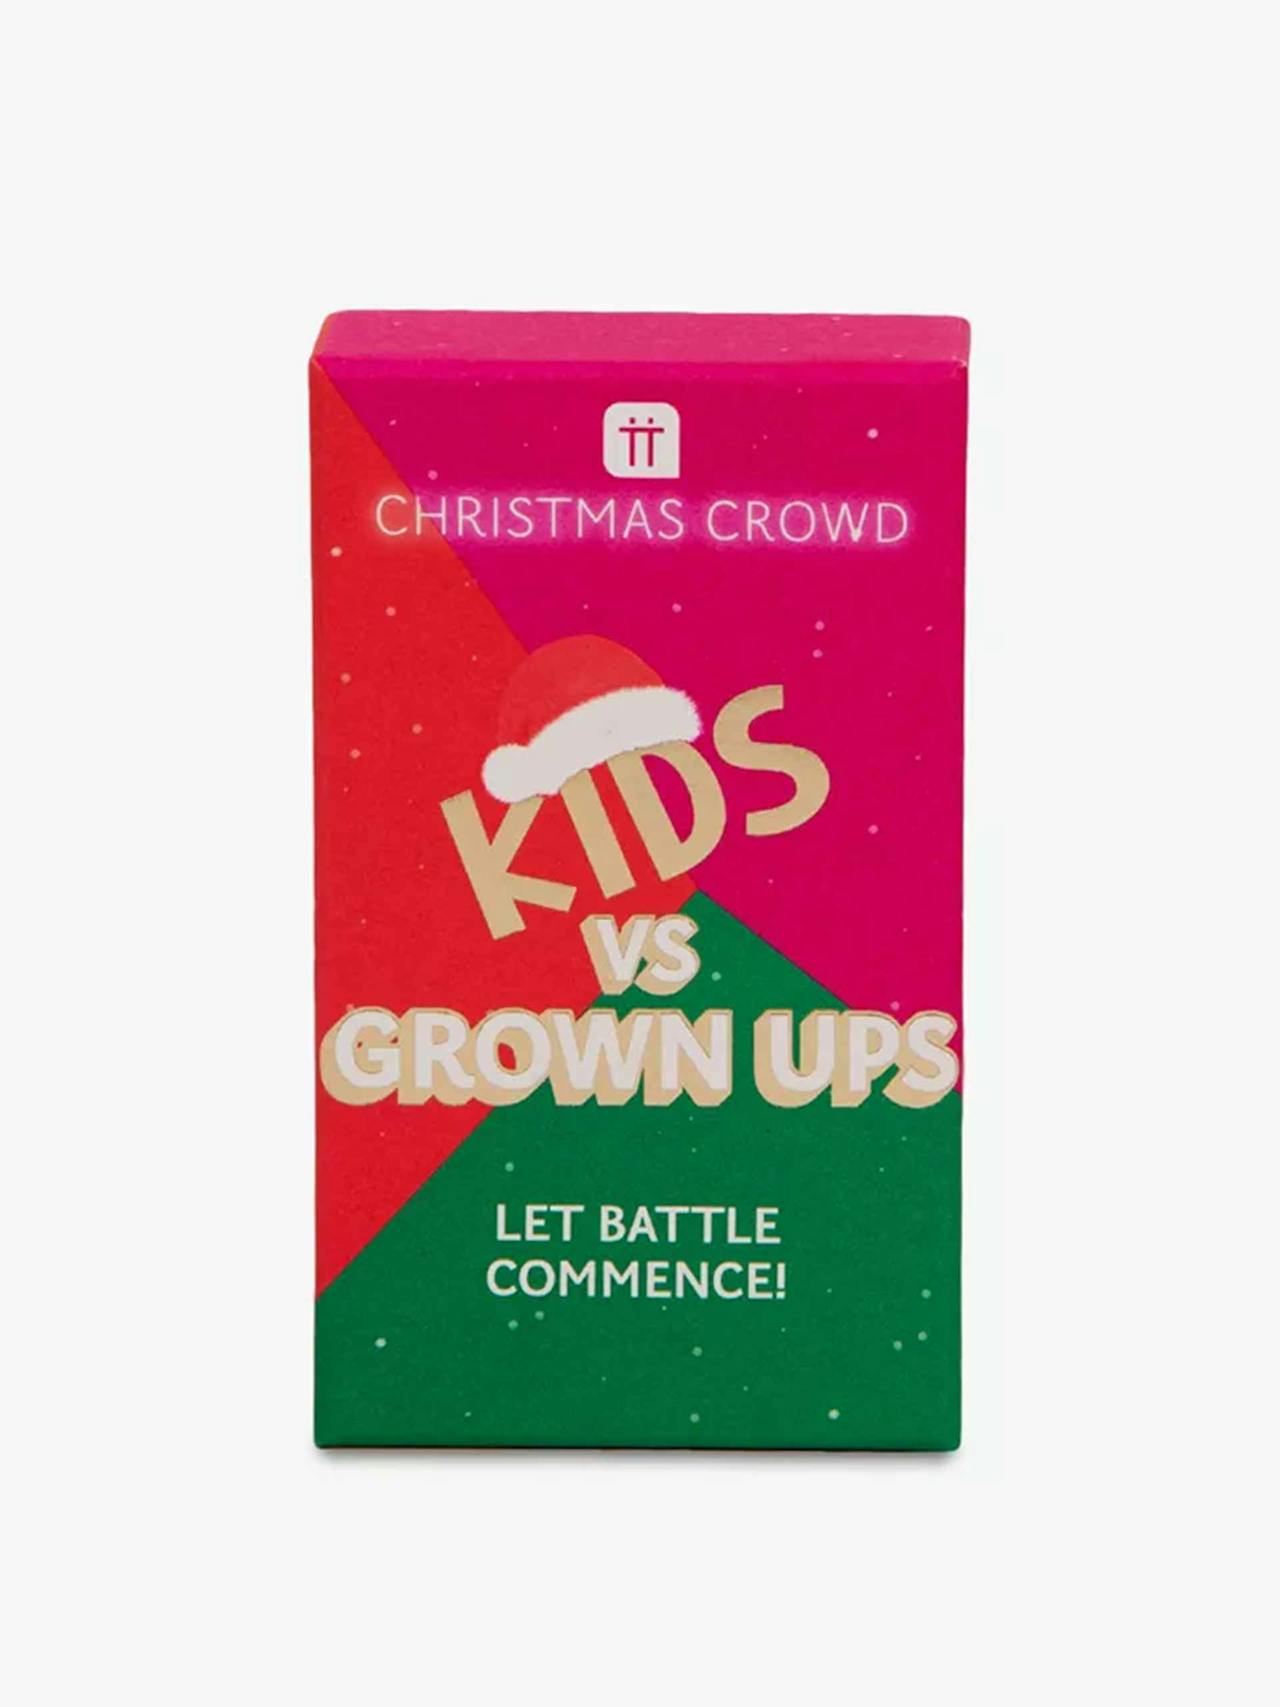 Kids vs grown ups Christmas trivia game